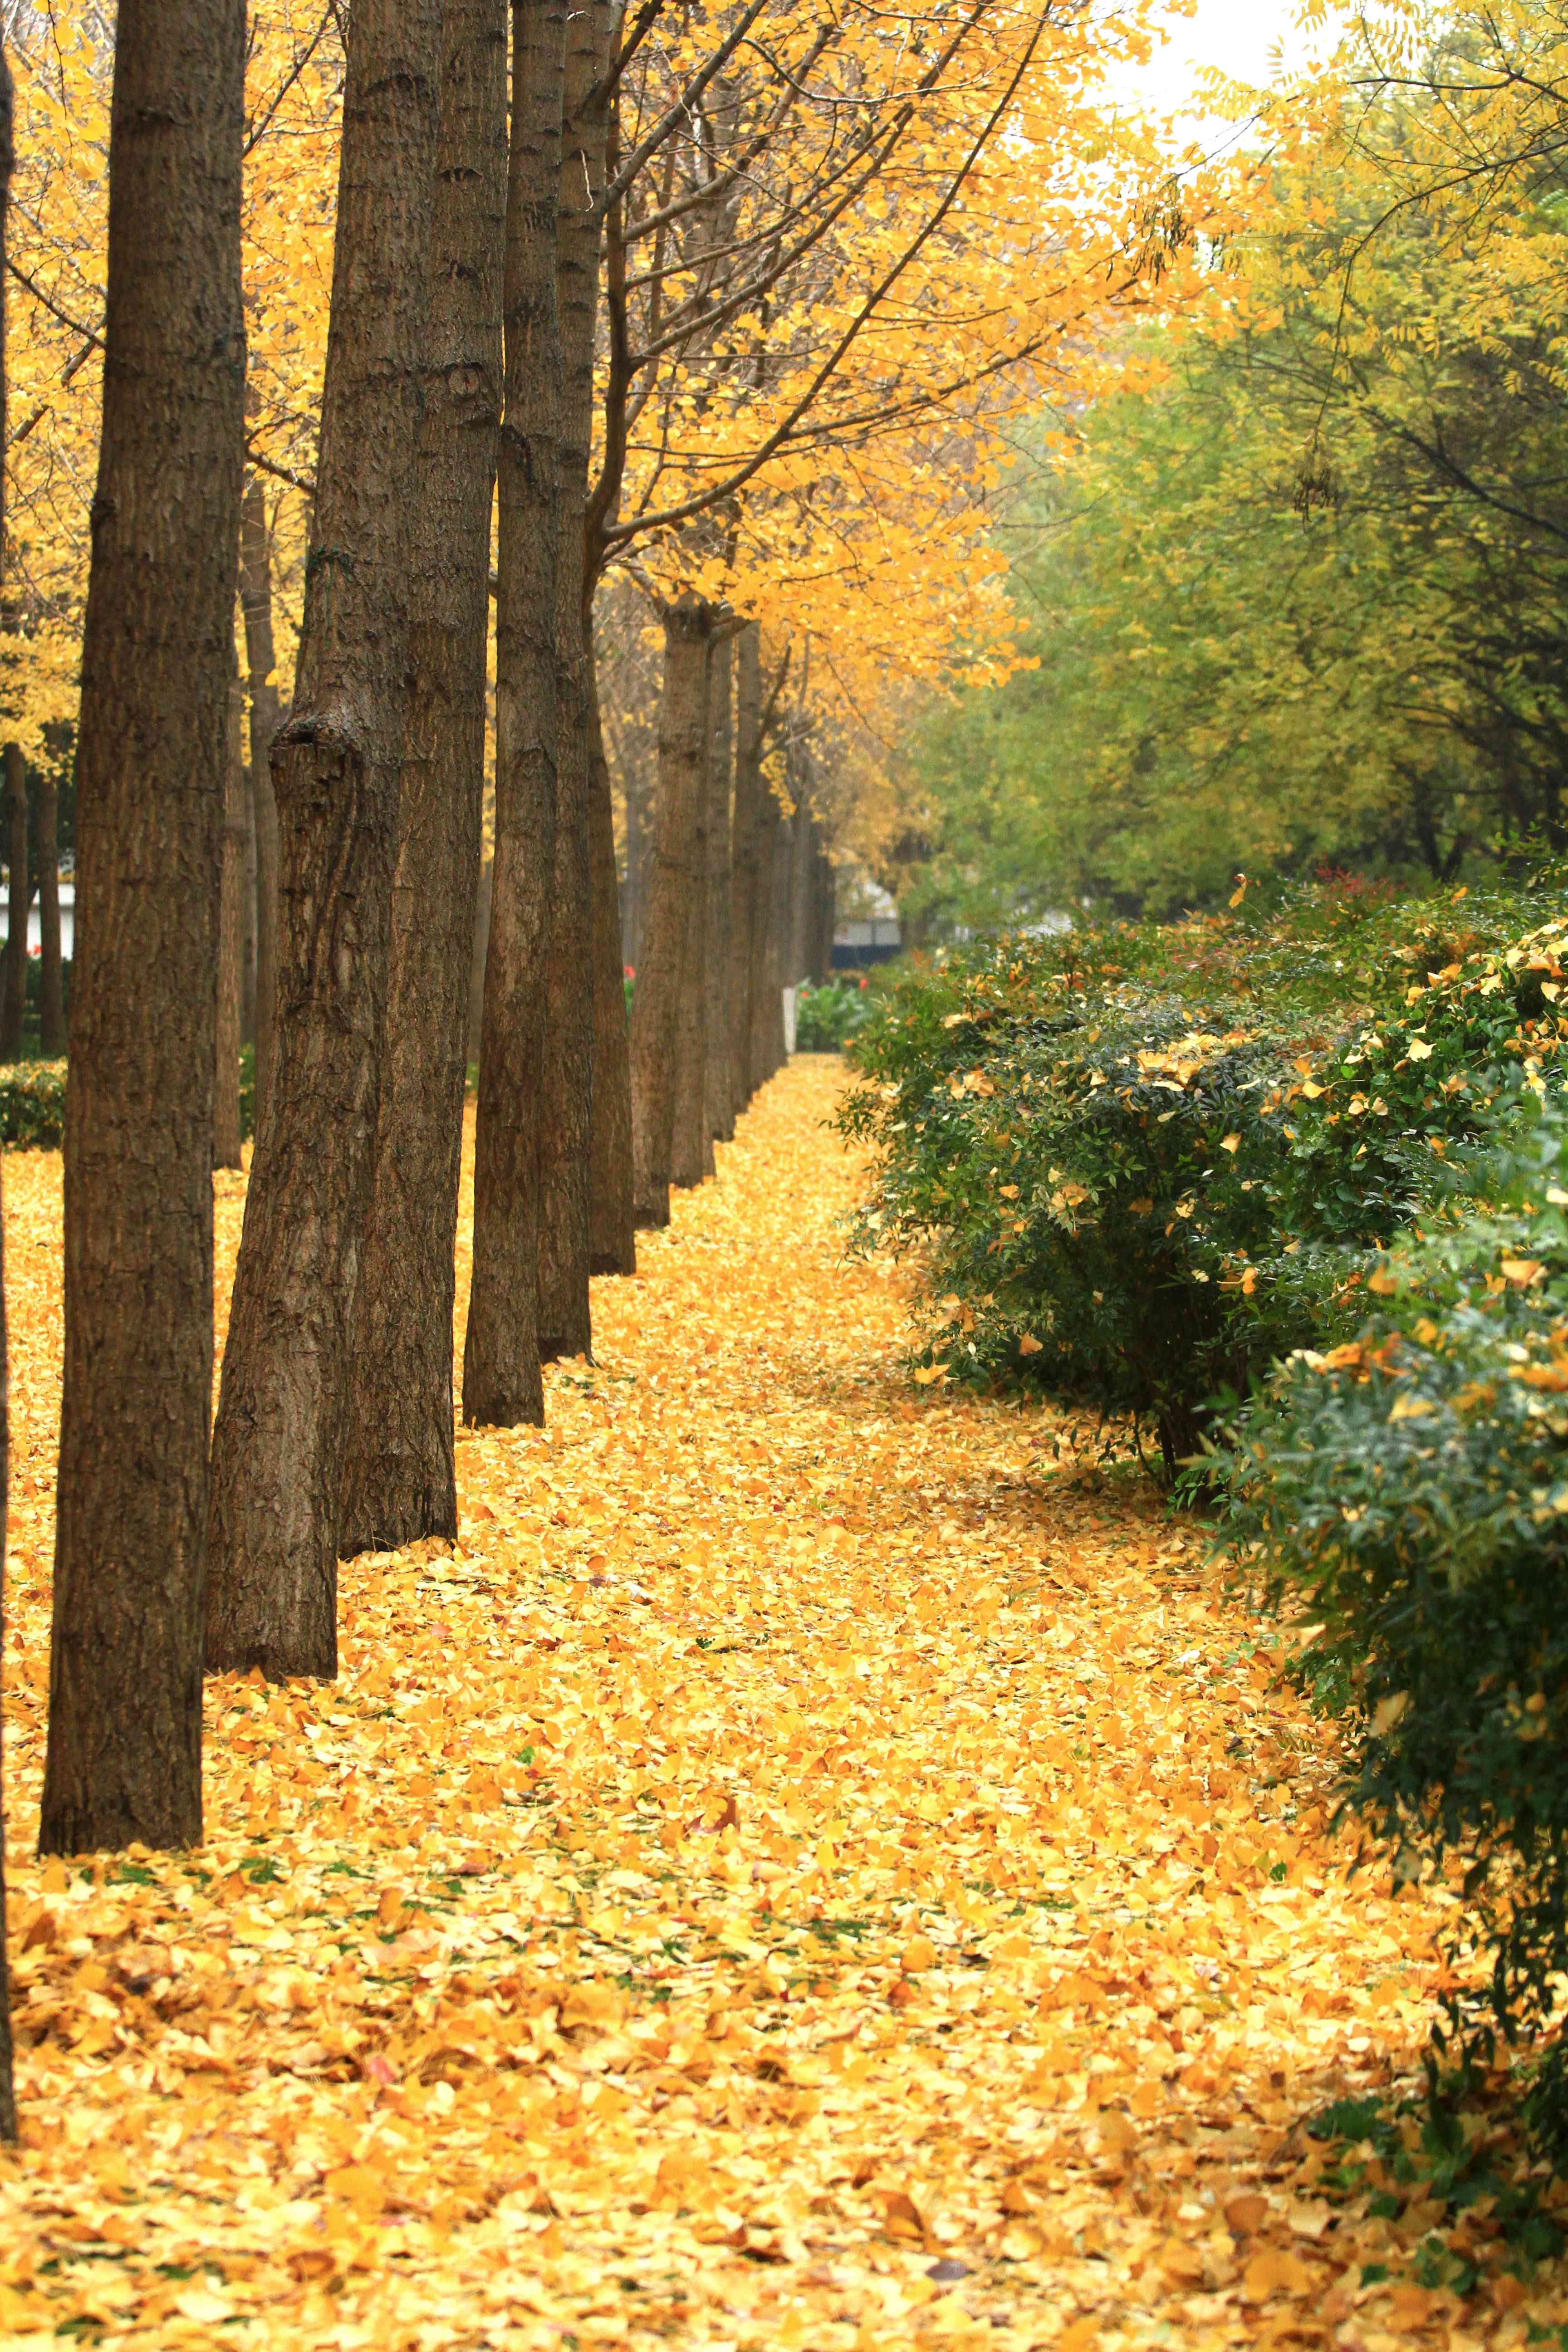 郑州文博广场银杏林内,大风过处黄叶飘零,满地金黄祥和静美,落叶之美